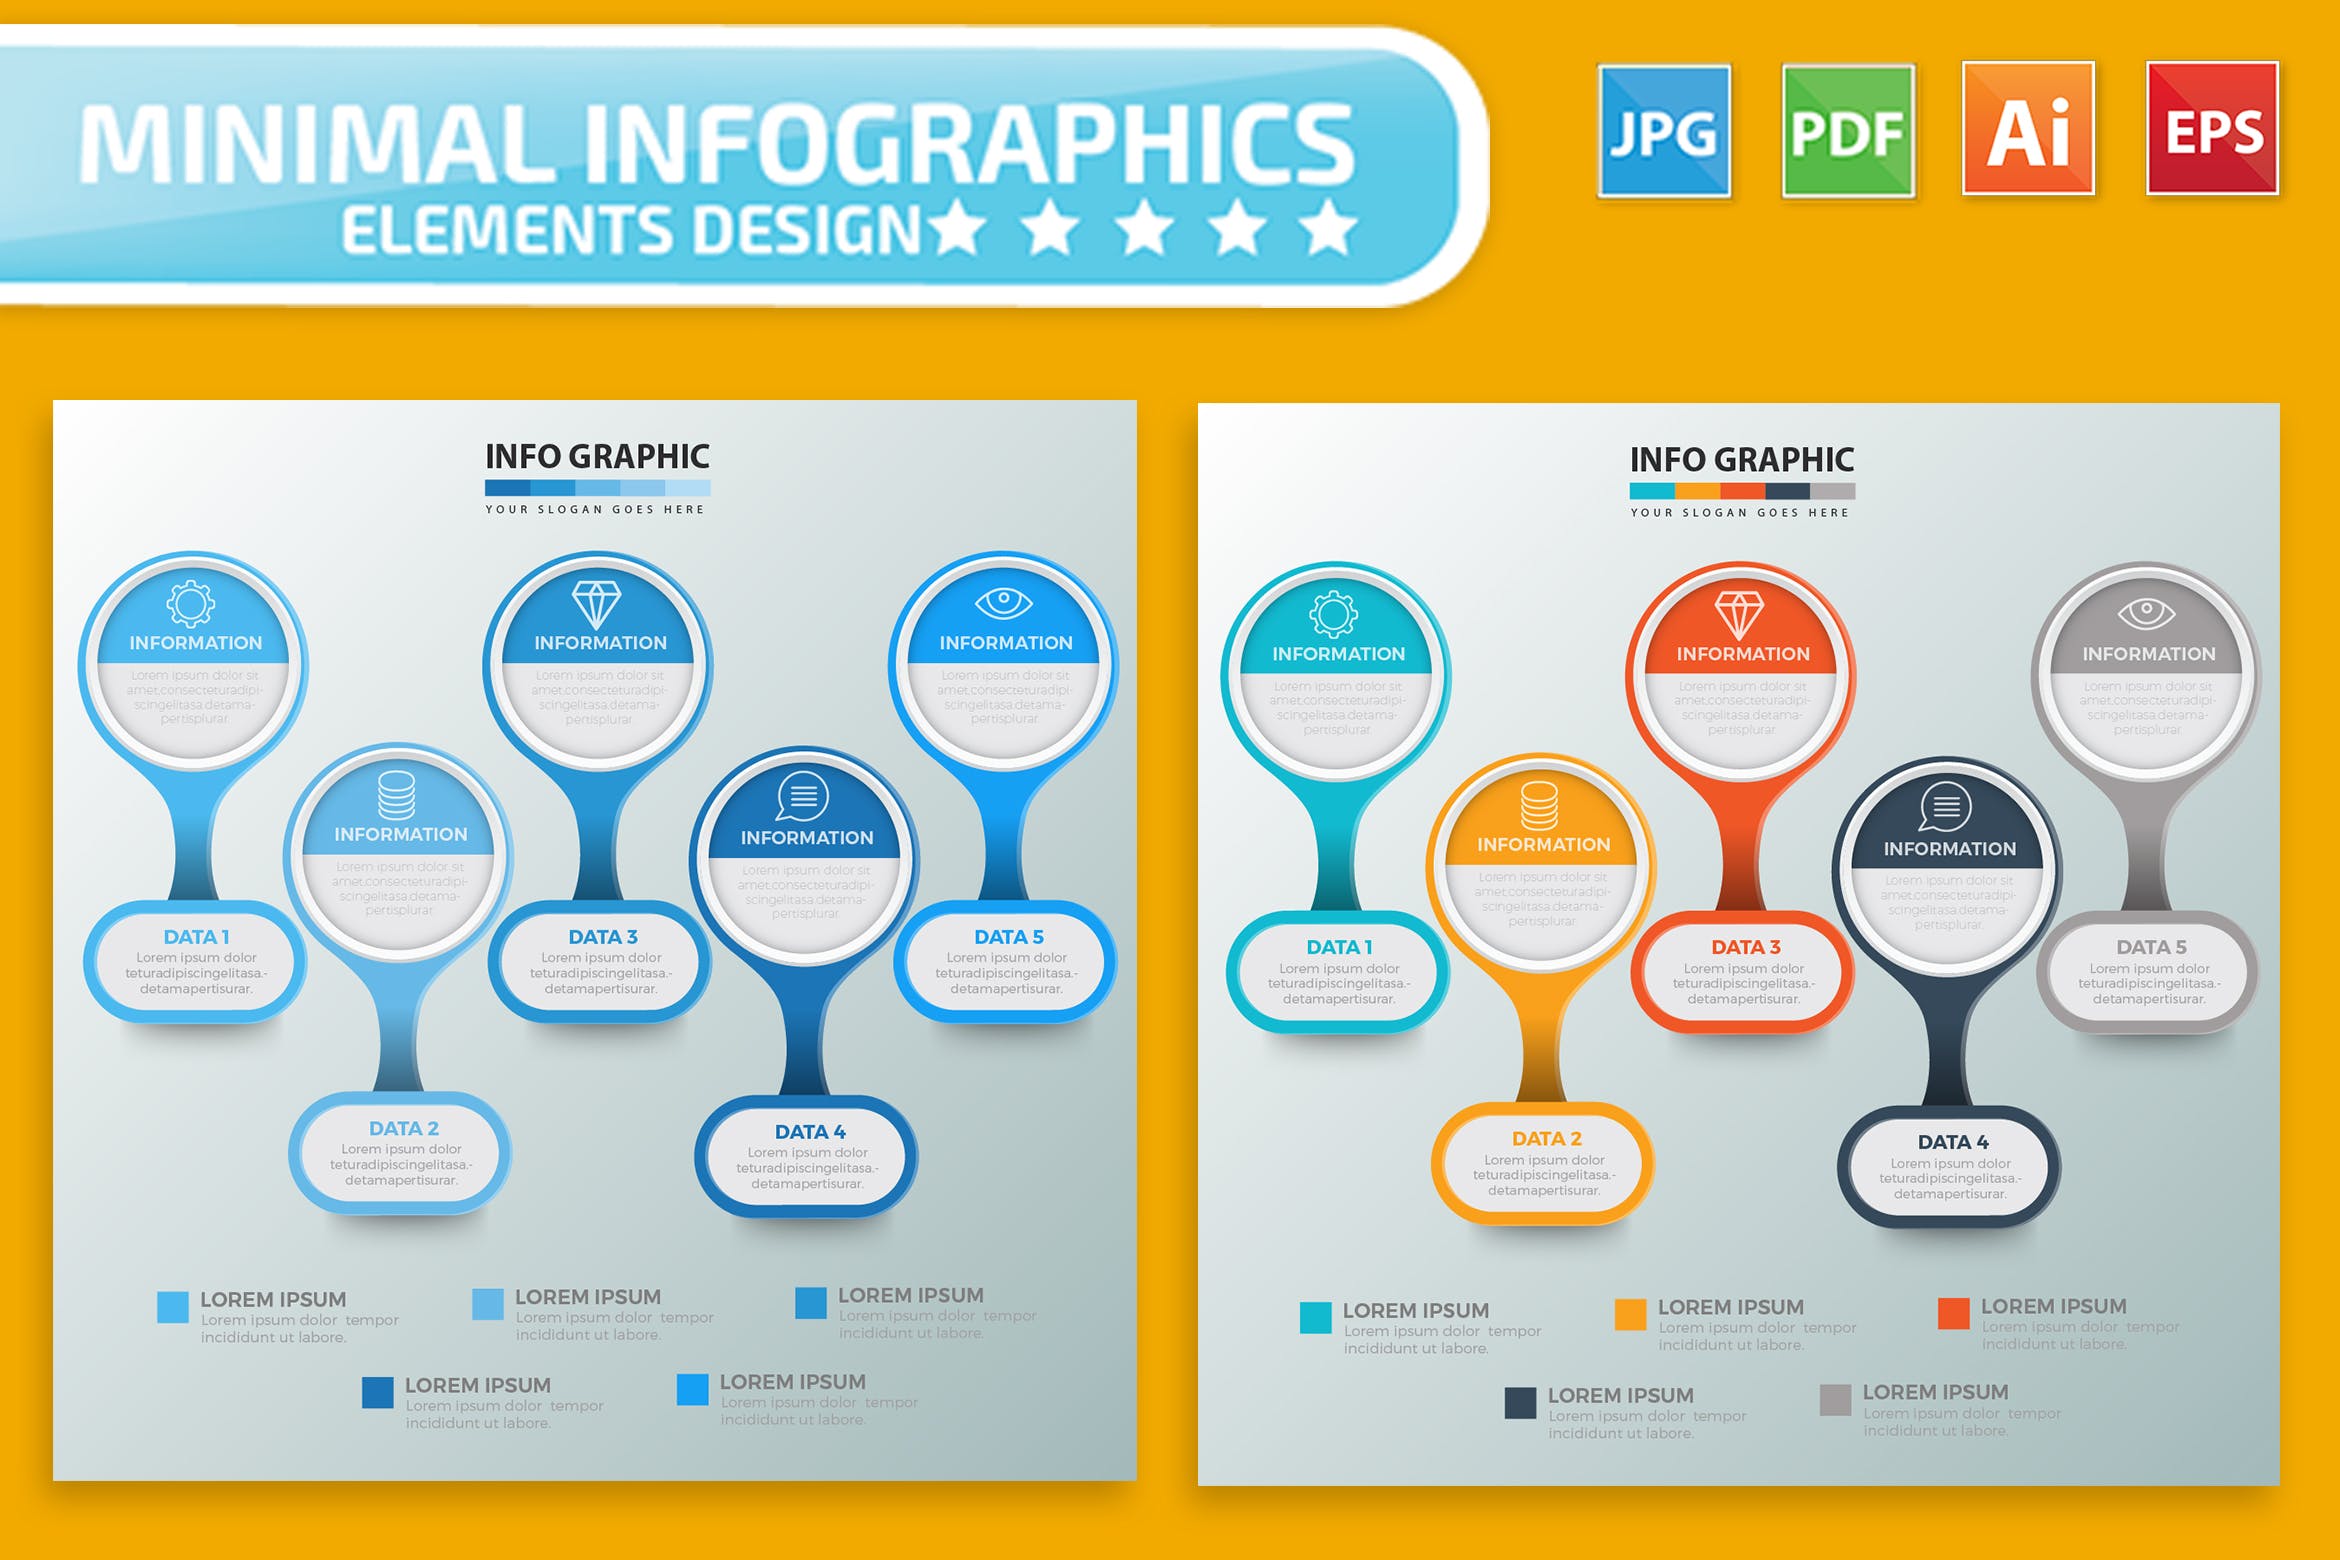 要点说明/重要特征信息图表矢量图形16素材精选素材v2 Infographic Elements Design插图